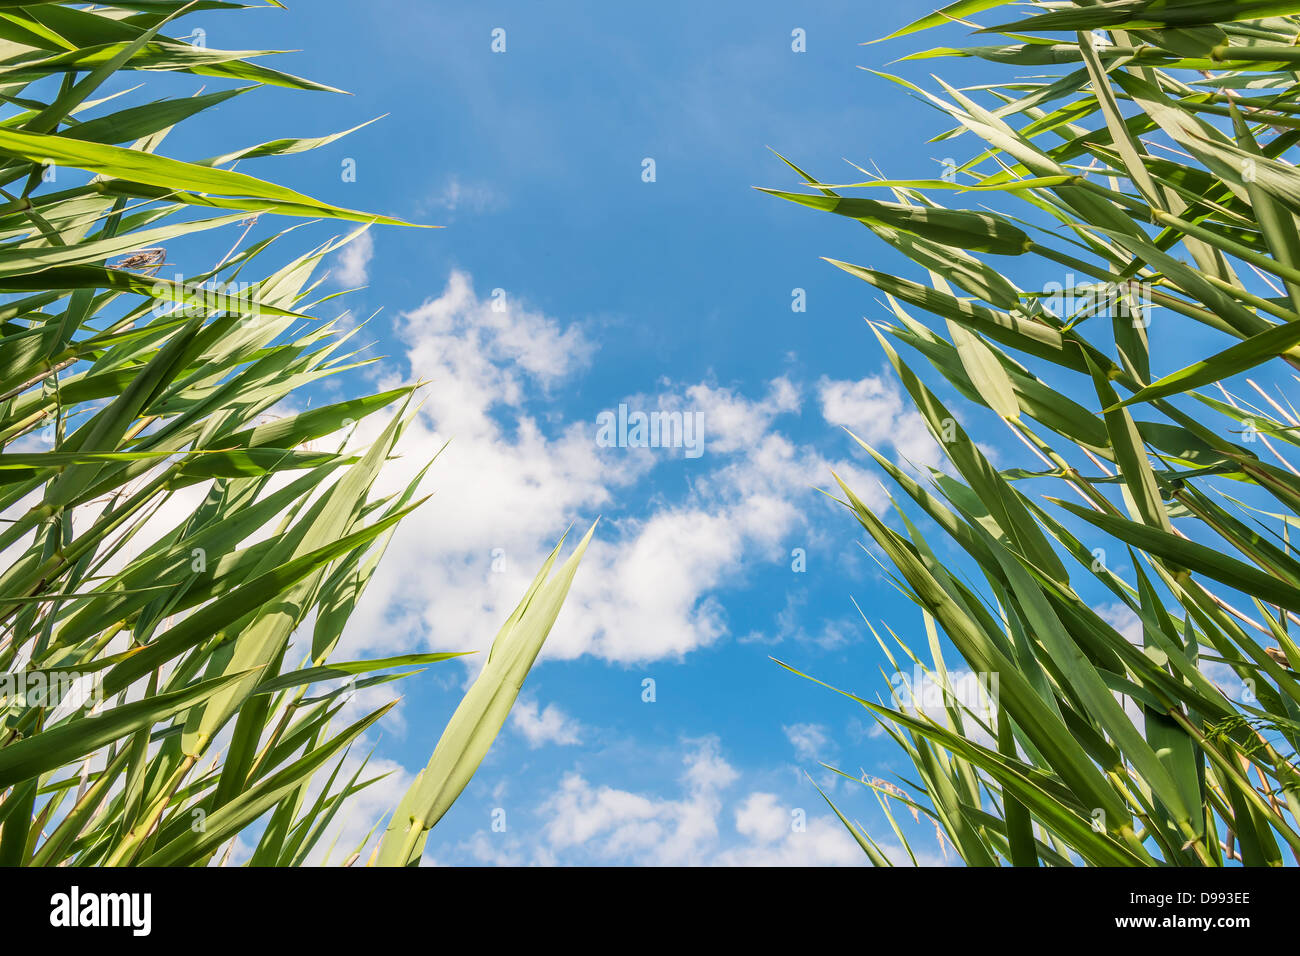 Green ance fotografato dal basso contro un cielo blu con nuvole bianche Foto Stock